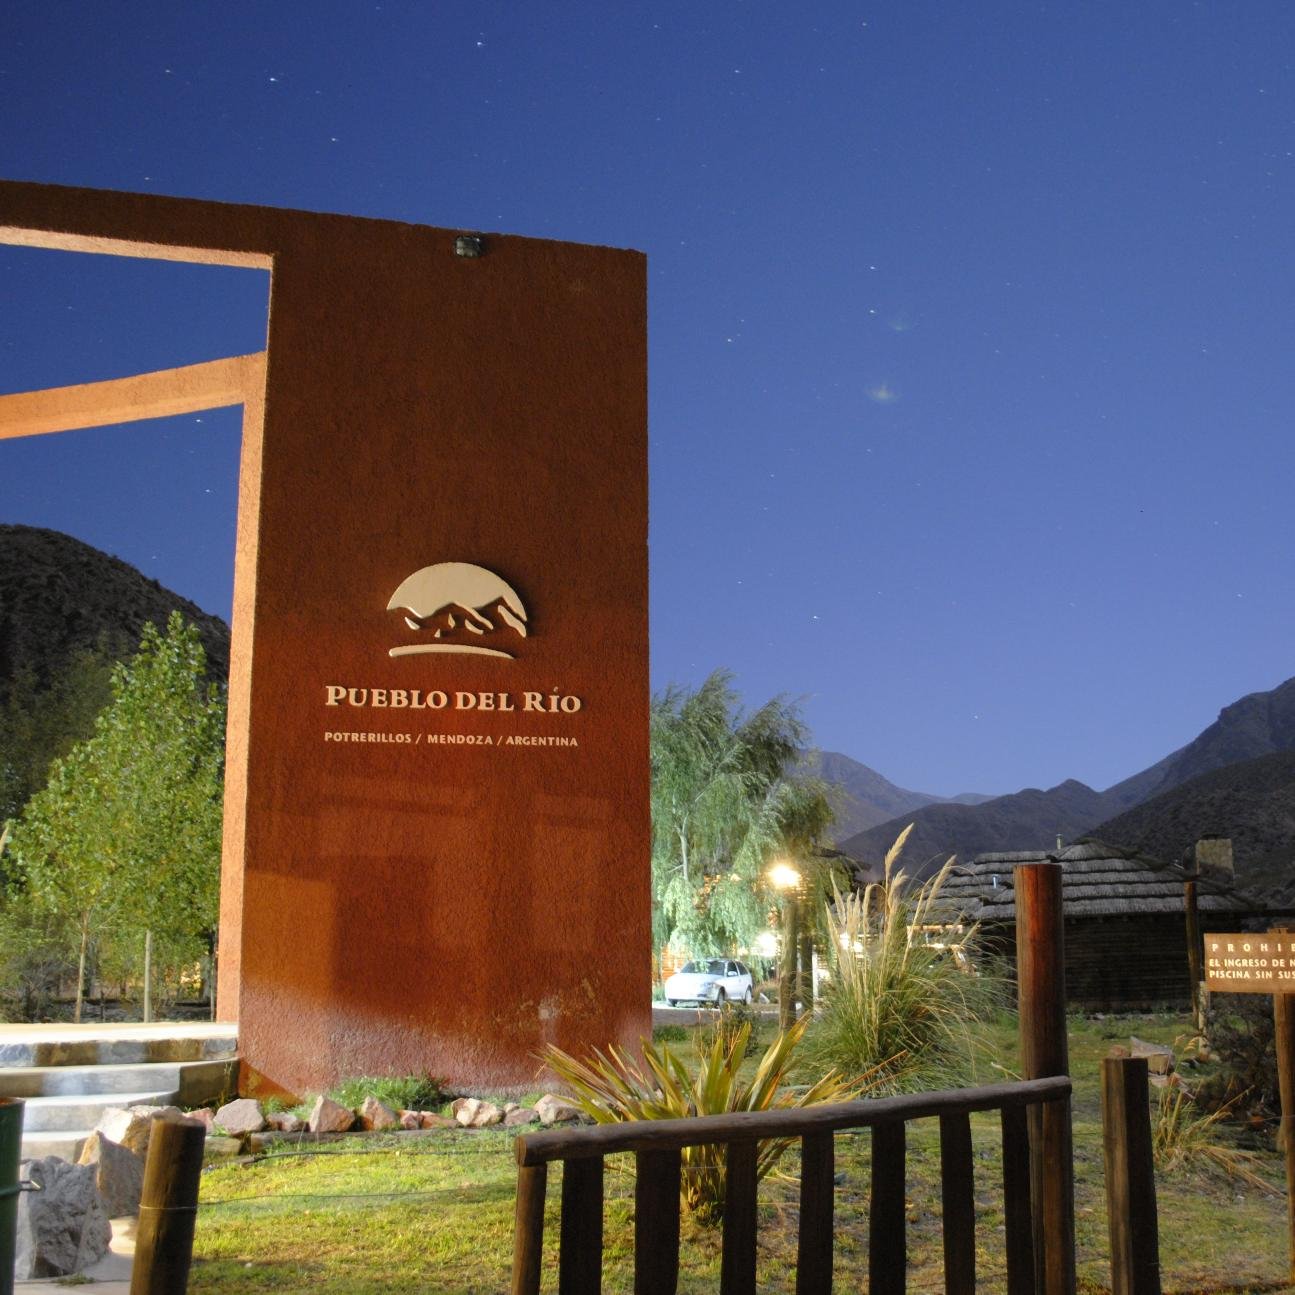 Alojate en Cabaña de montaña sobre Río Mendoza, Potrerillos, al pie de la Cordillera de Los Andes, donde la naturaleza será tu anfitrión.